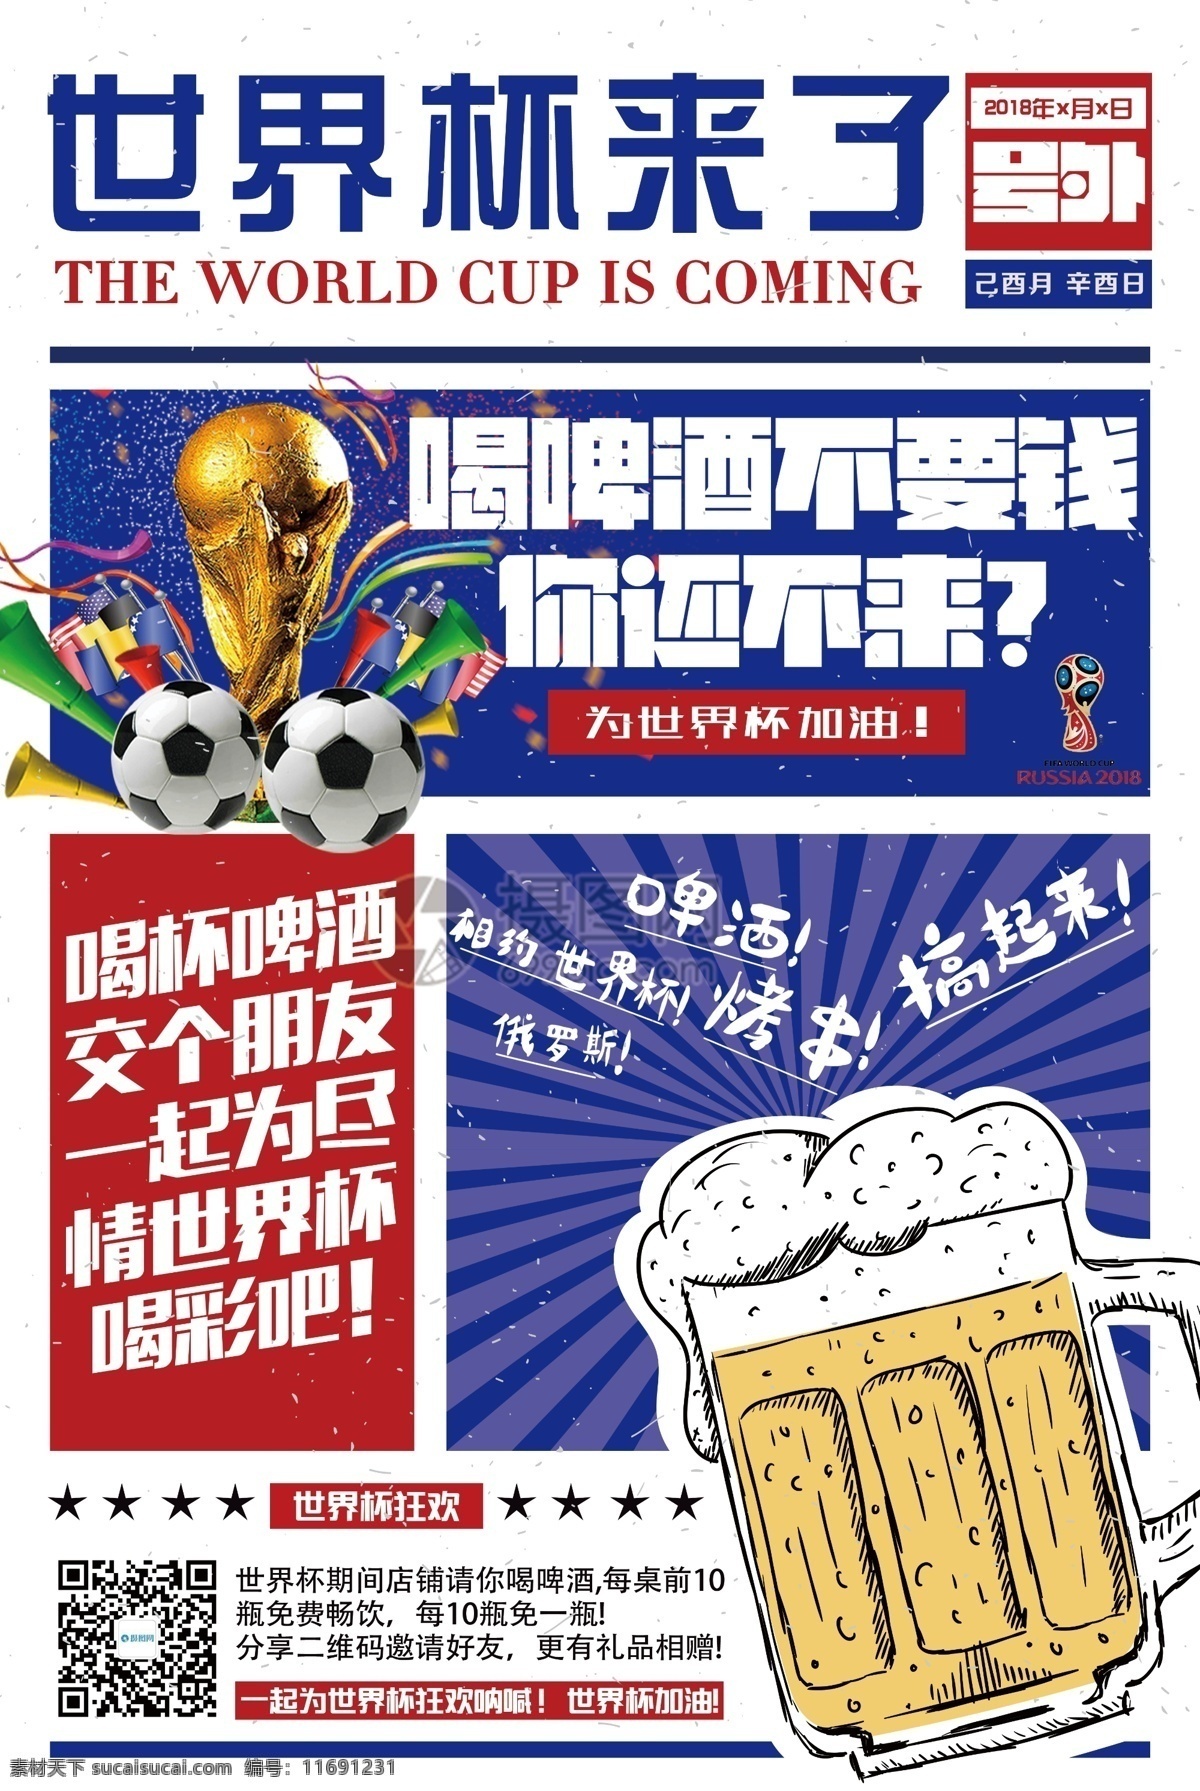 世界杯 啤酒 海报 世界杯来了 激情世界杯 足球 比赛 喝彩 俄罗斯世界杯